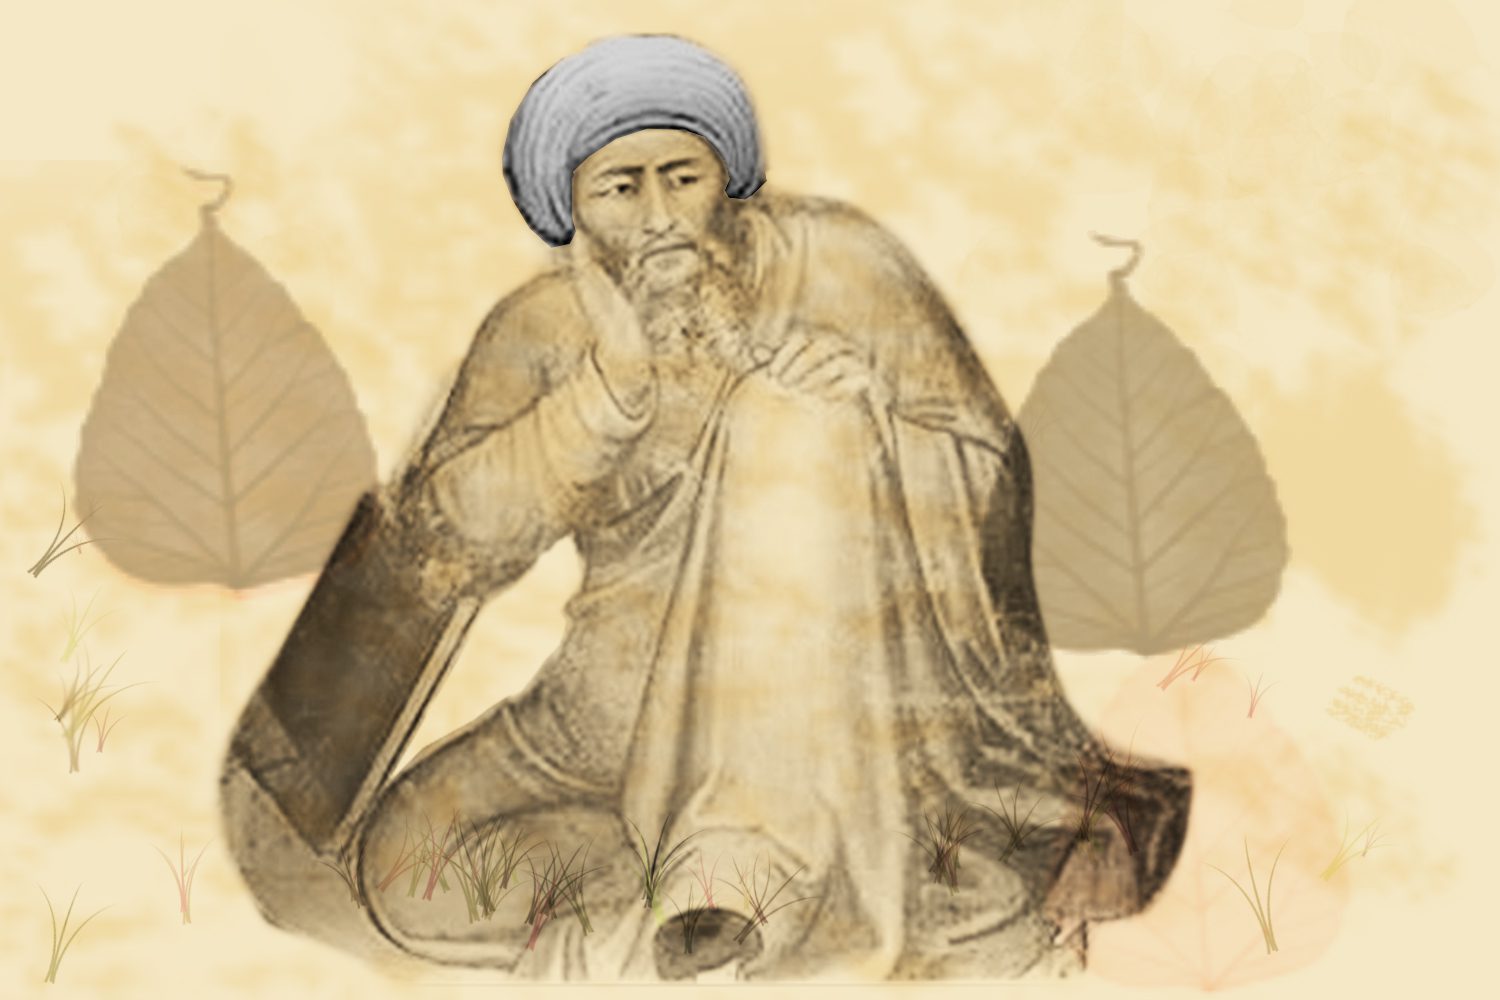 Biografi Ibnu Rusyd 510 H/126 M, Filosof Muslim Ternama Dari Cordoba